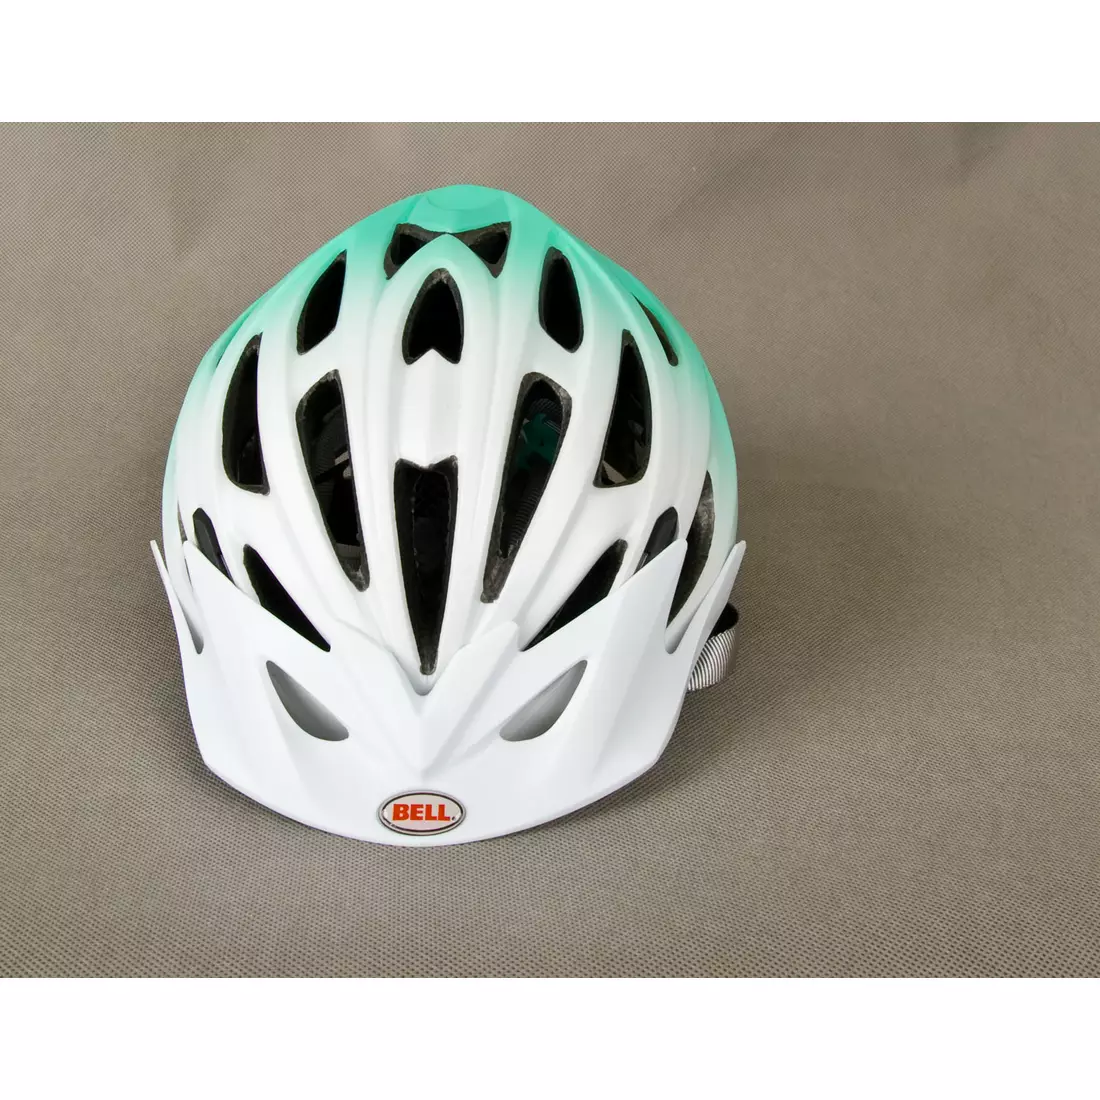 BELL SOLARA – Damen-Fahrradhelm, weiß und grün